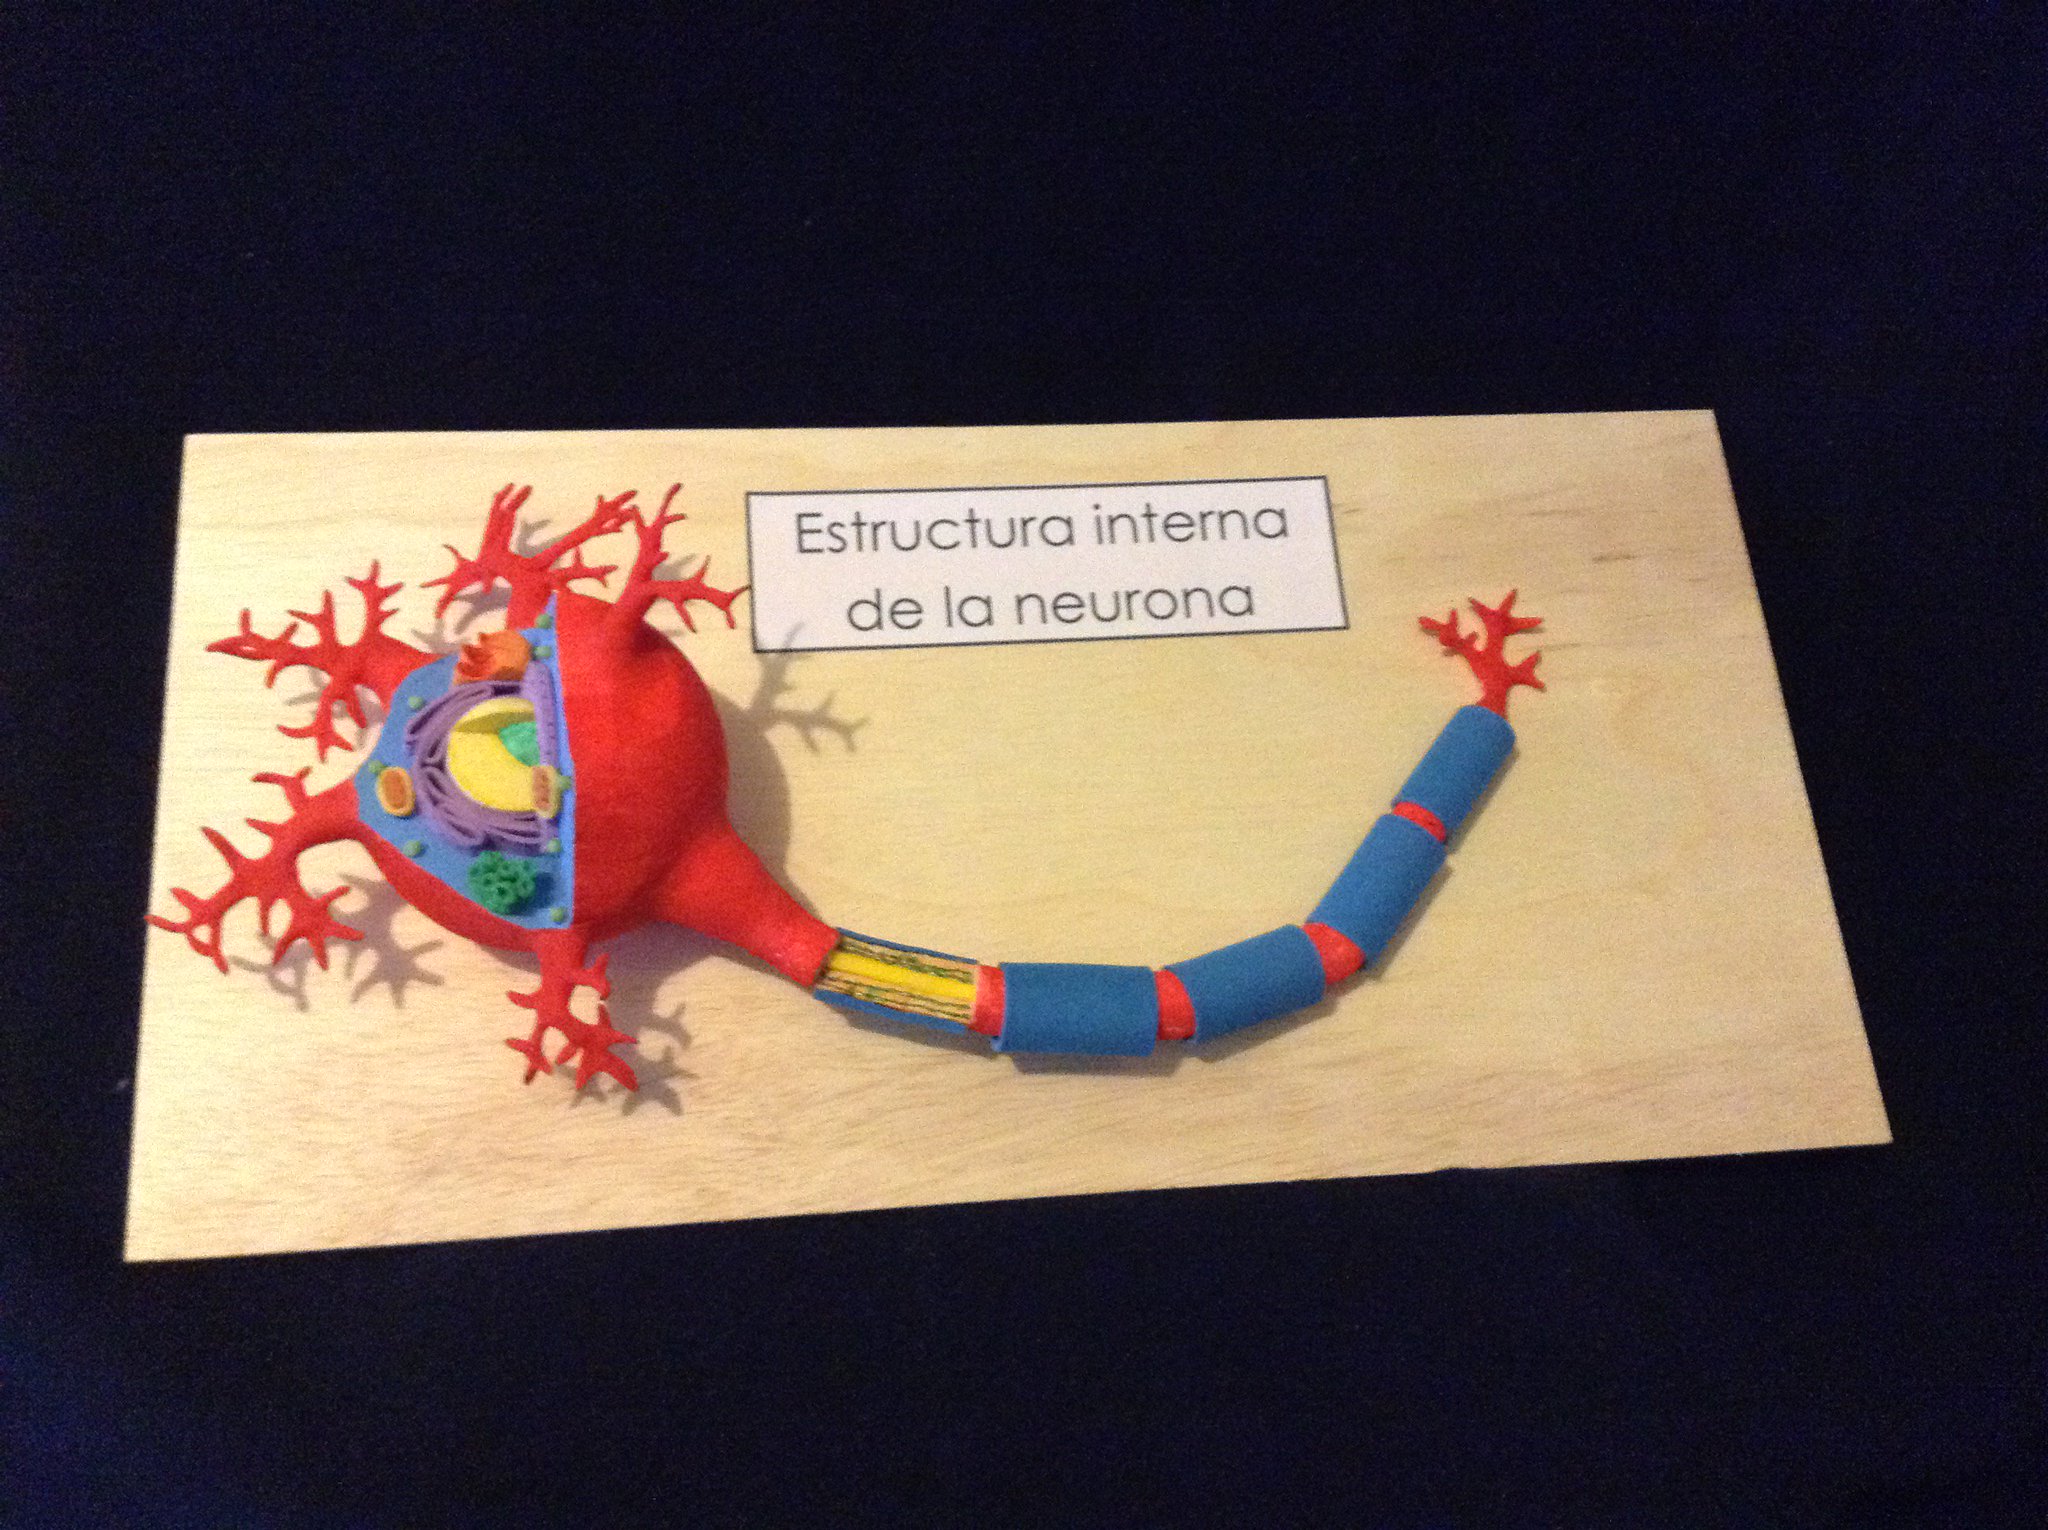 on Twitter: "#neurona, #estructuraneurona https://t.co/in7NfCCYEO" / Twitter